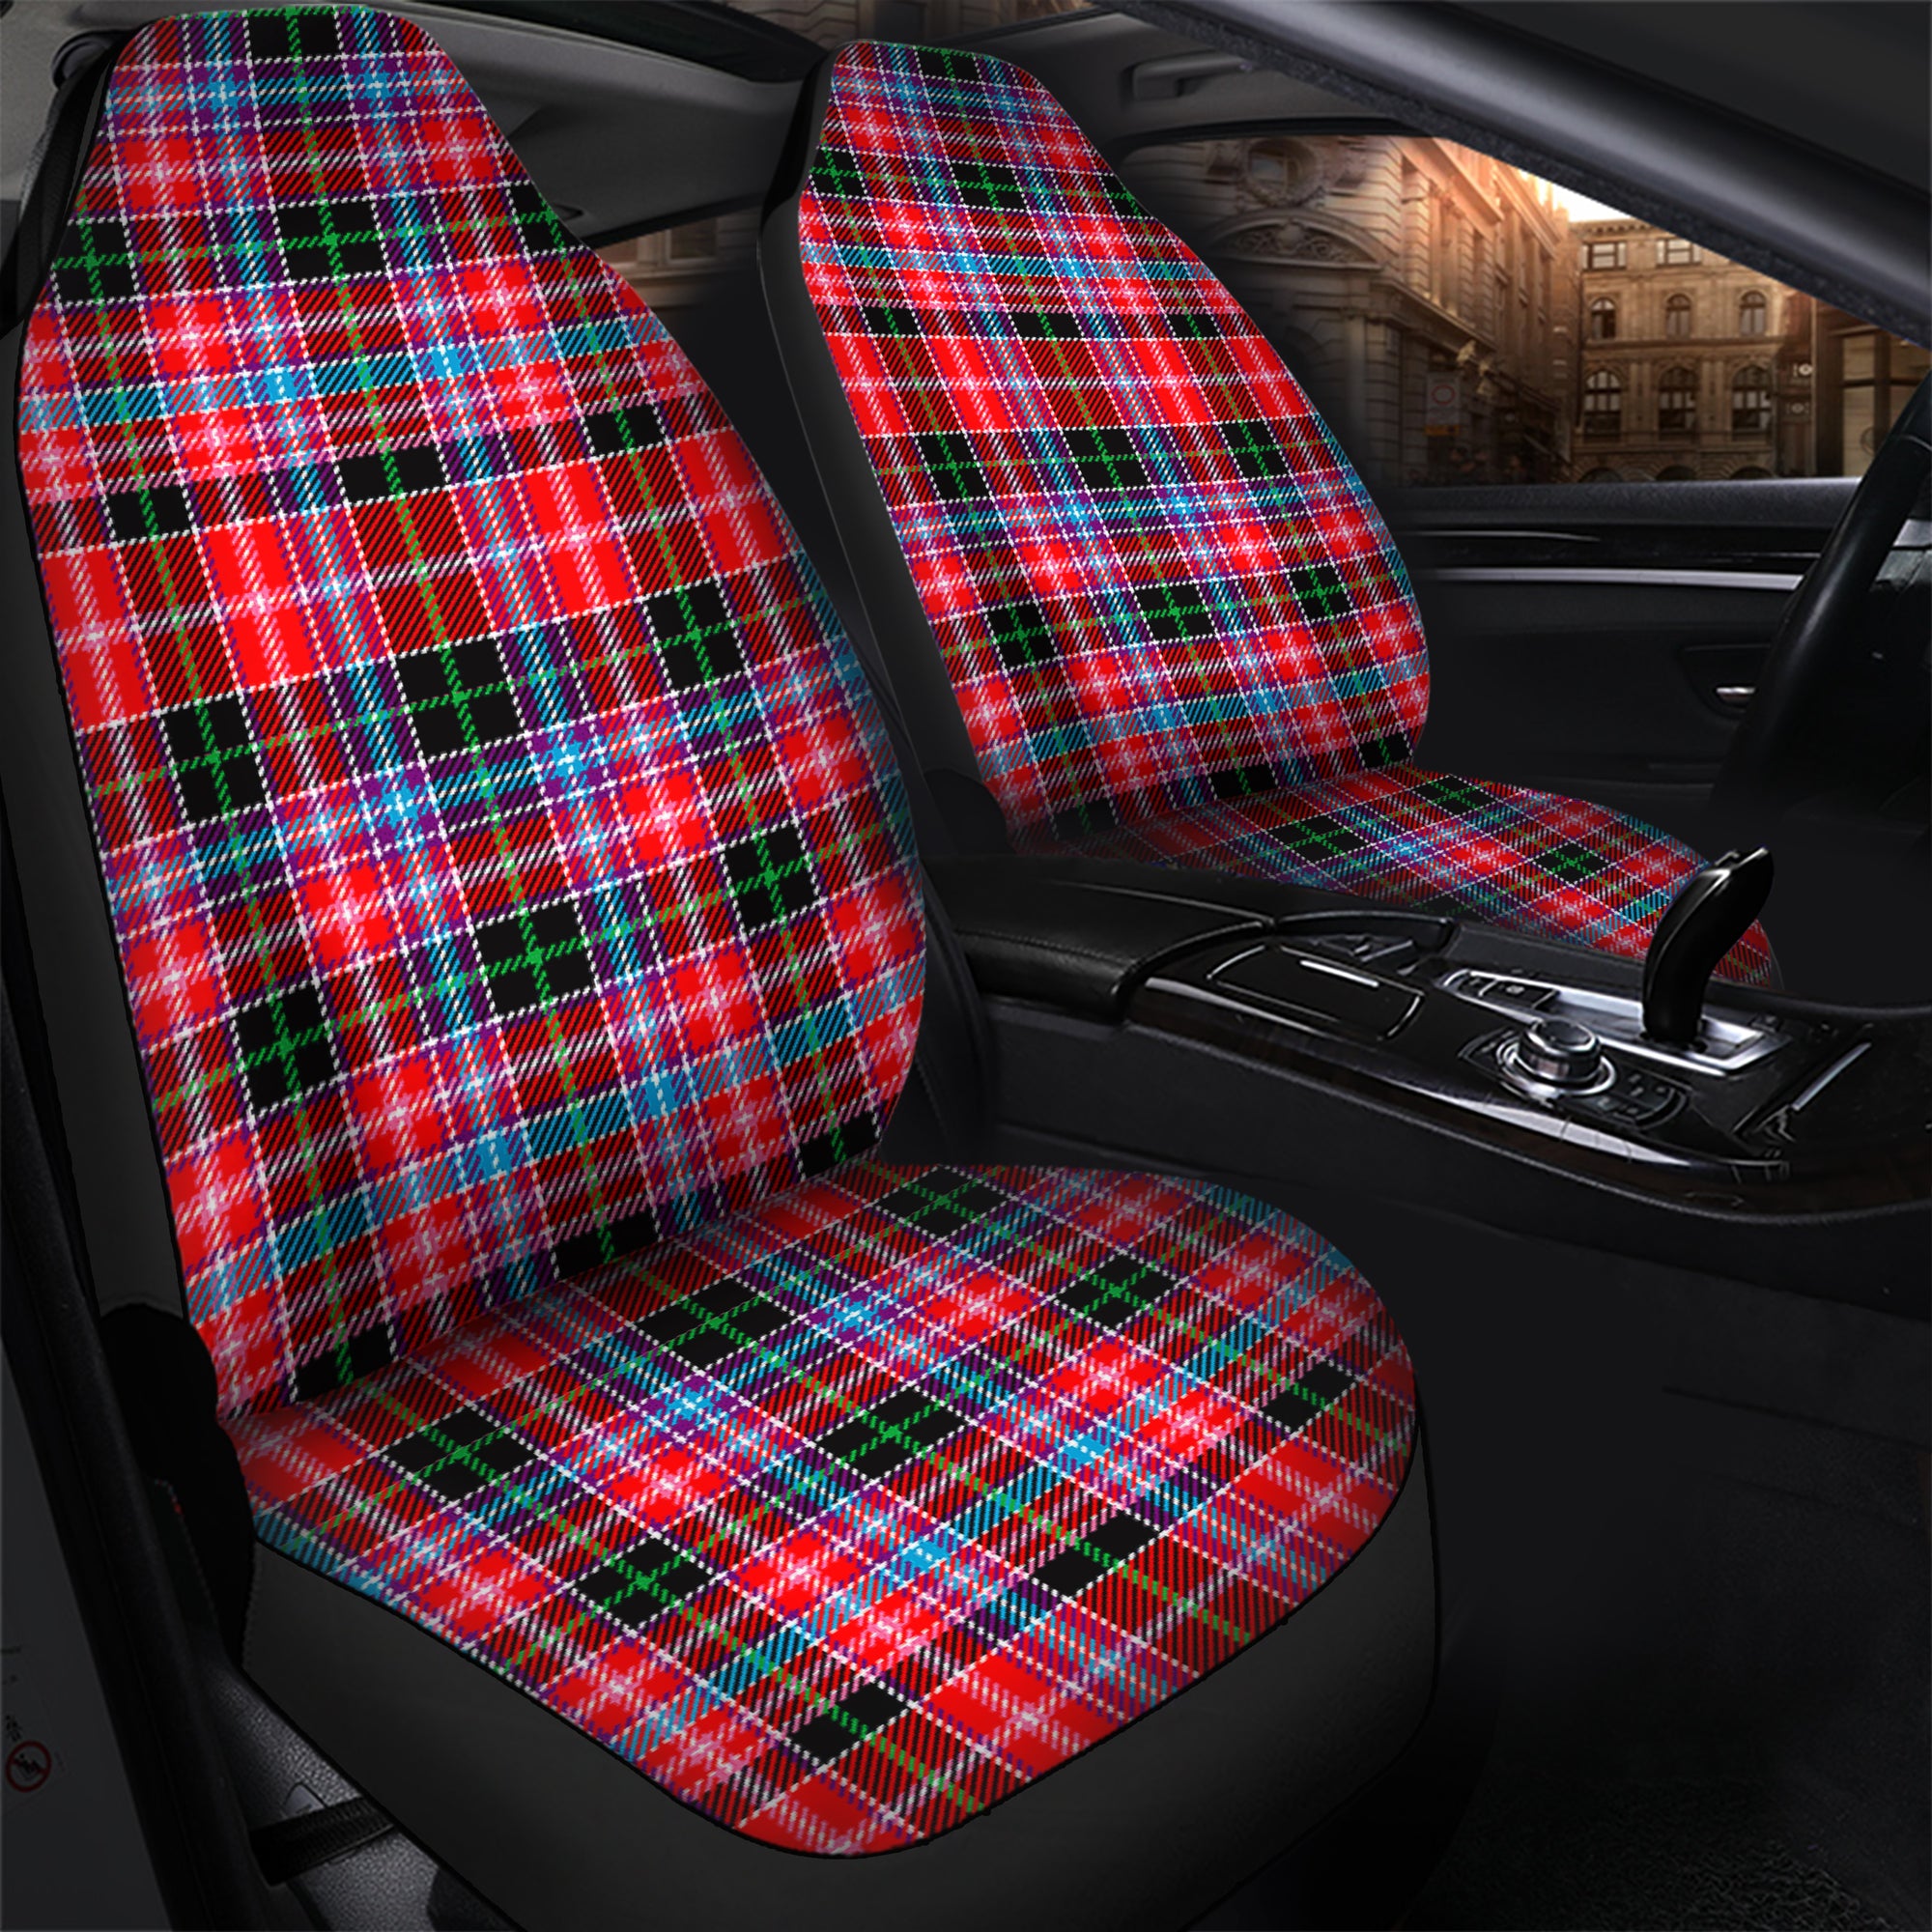 scottish-udny-clan-tartan-car-seat-cover